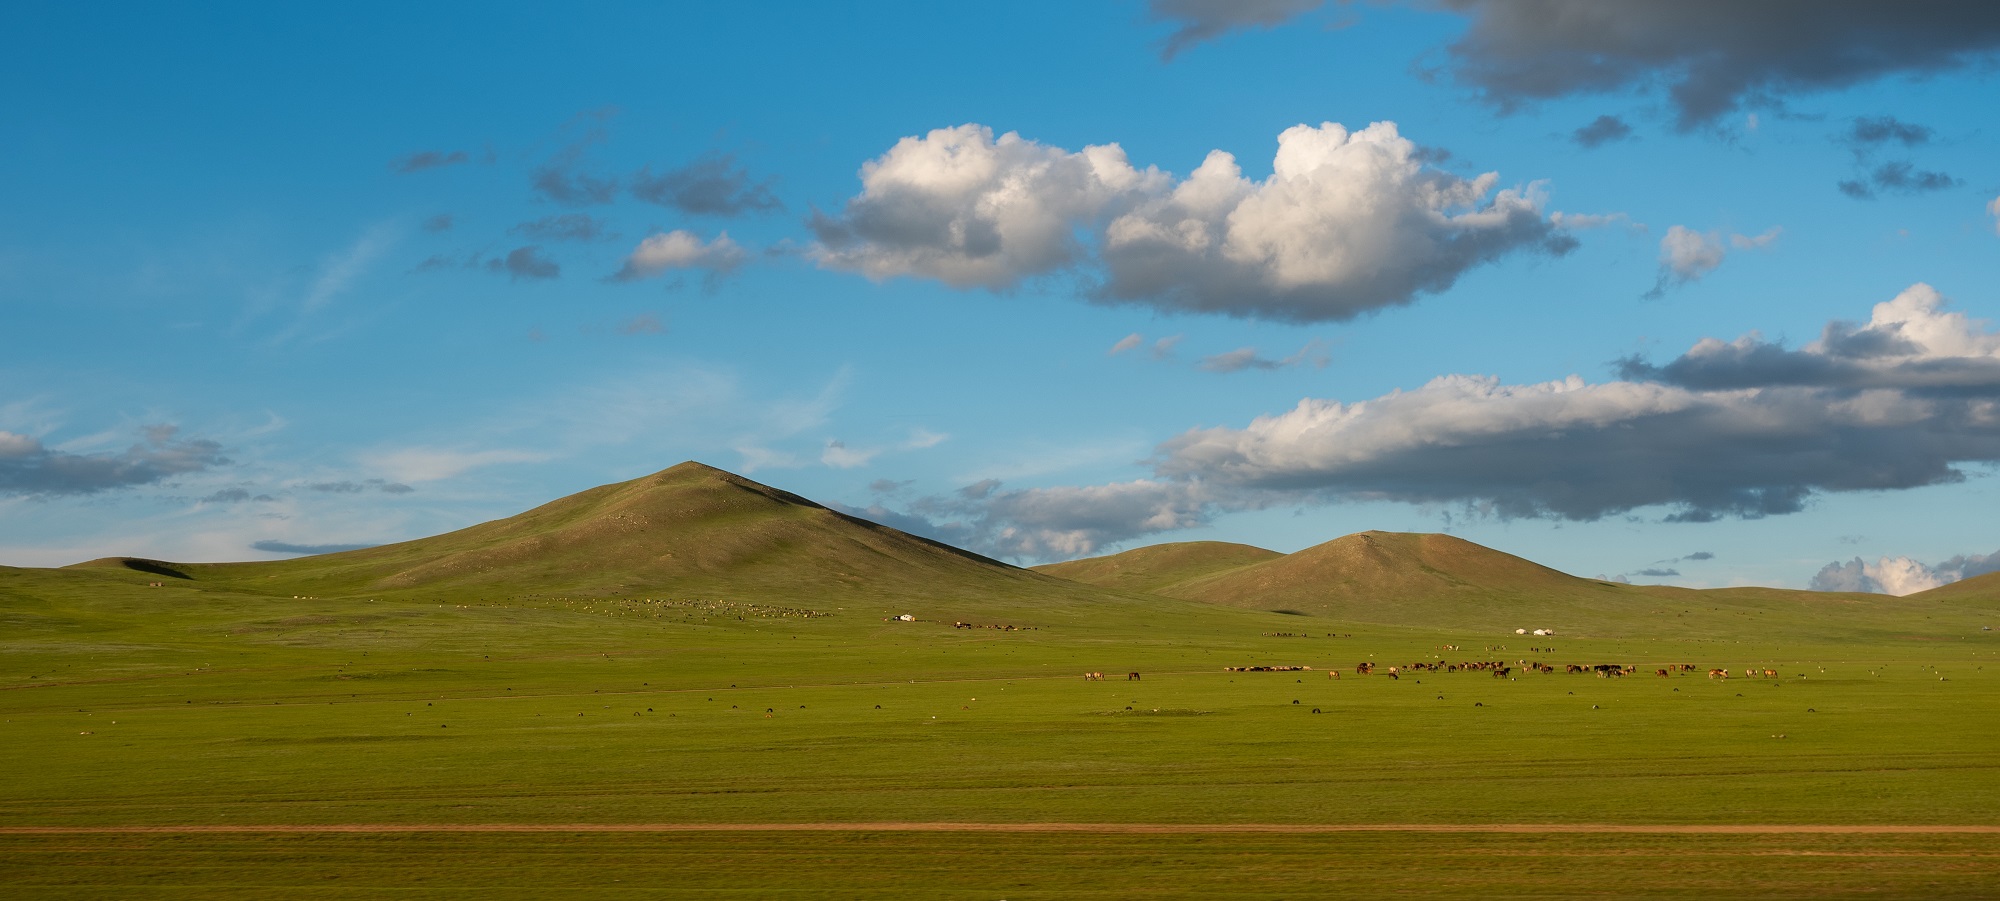 Cycling Mongolia